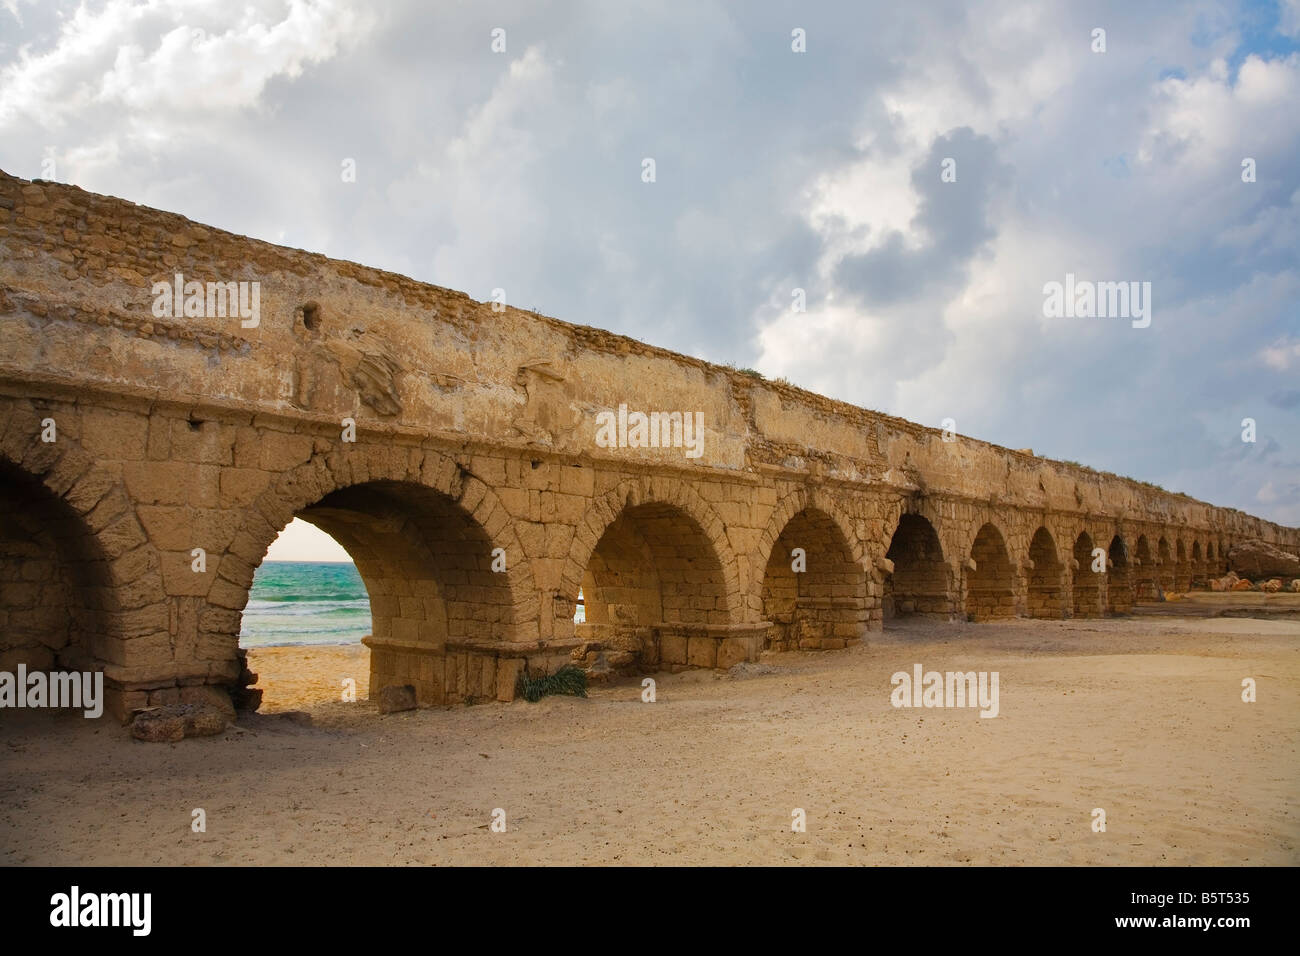 Acueducto perfectamente conservado de la época romana, en la costa del mar Mediterráneo en Israel Foto de stock